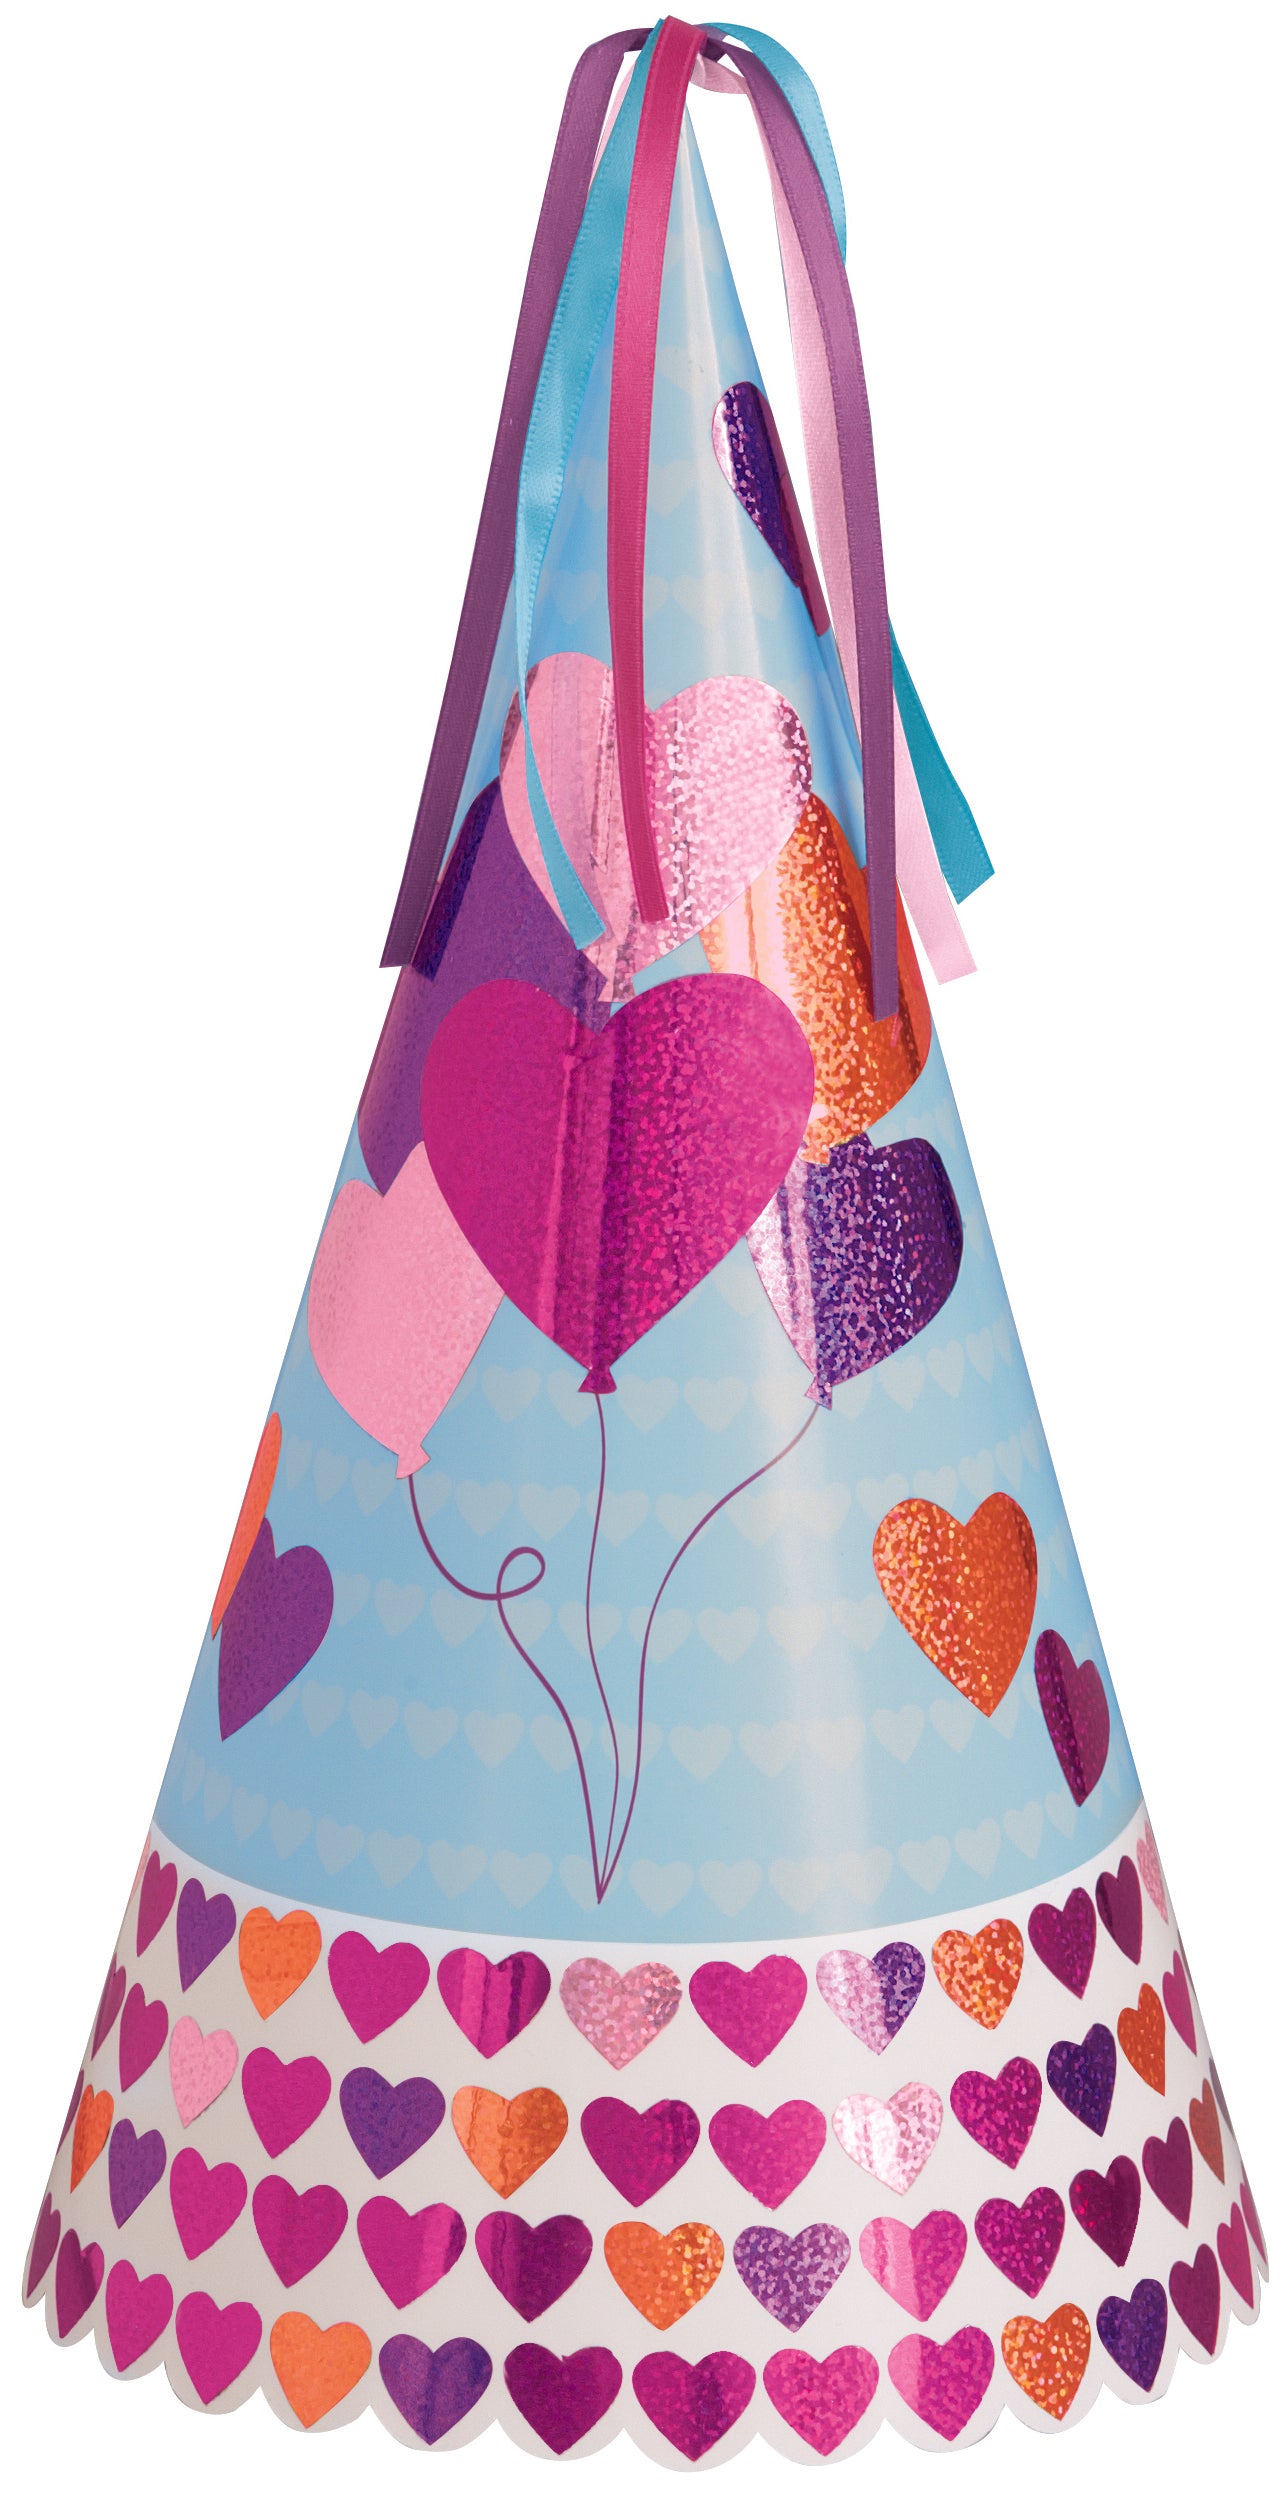 Balloon Hearts Prismatic Foil Party Hat - 32.5cm